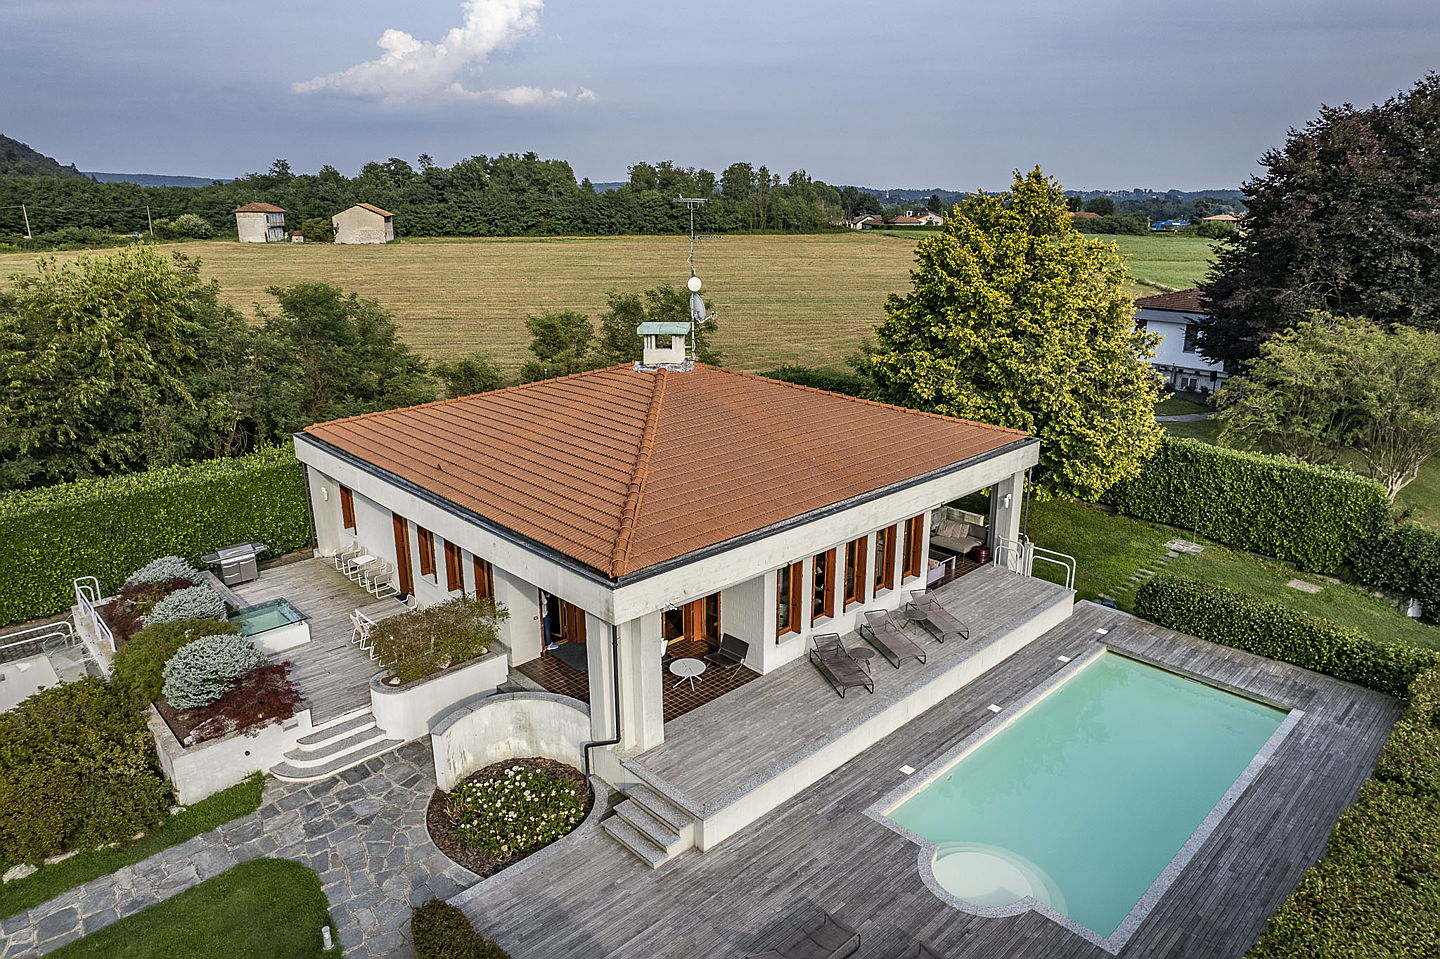  Laveno M.
- Affascinante villa sulle sponde del Lago Maggiore.jpg